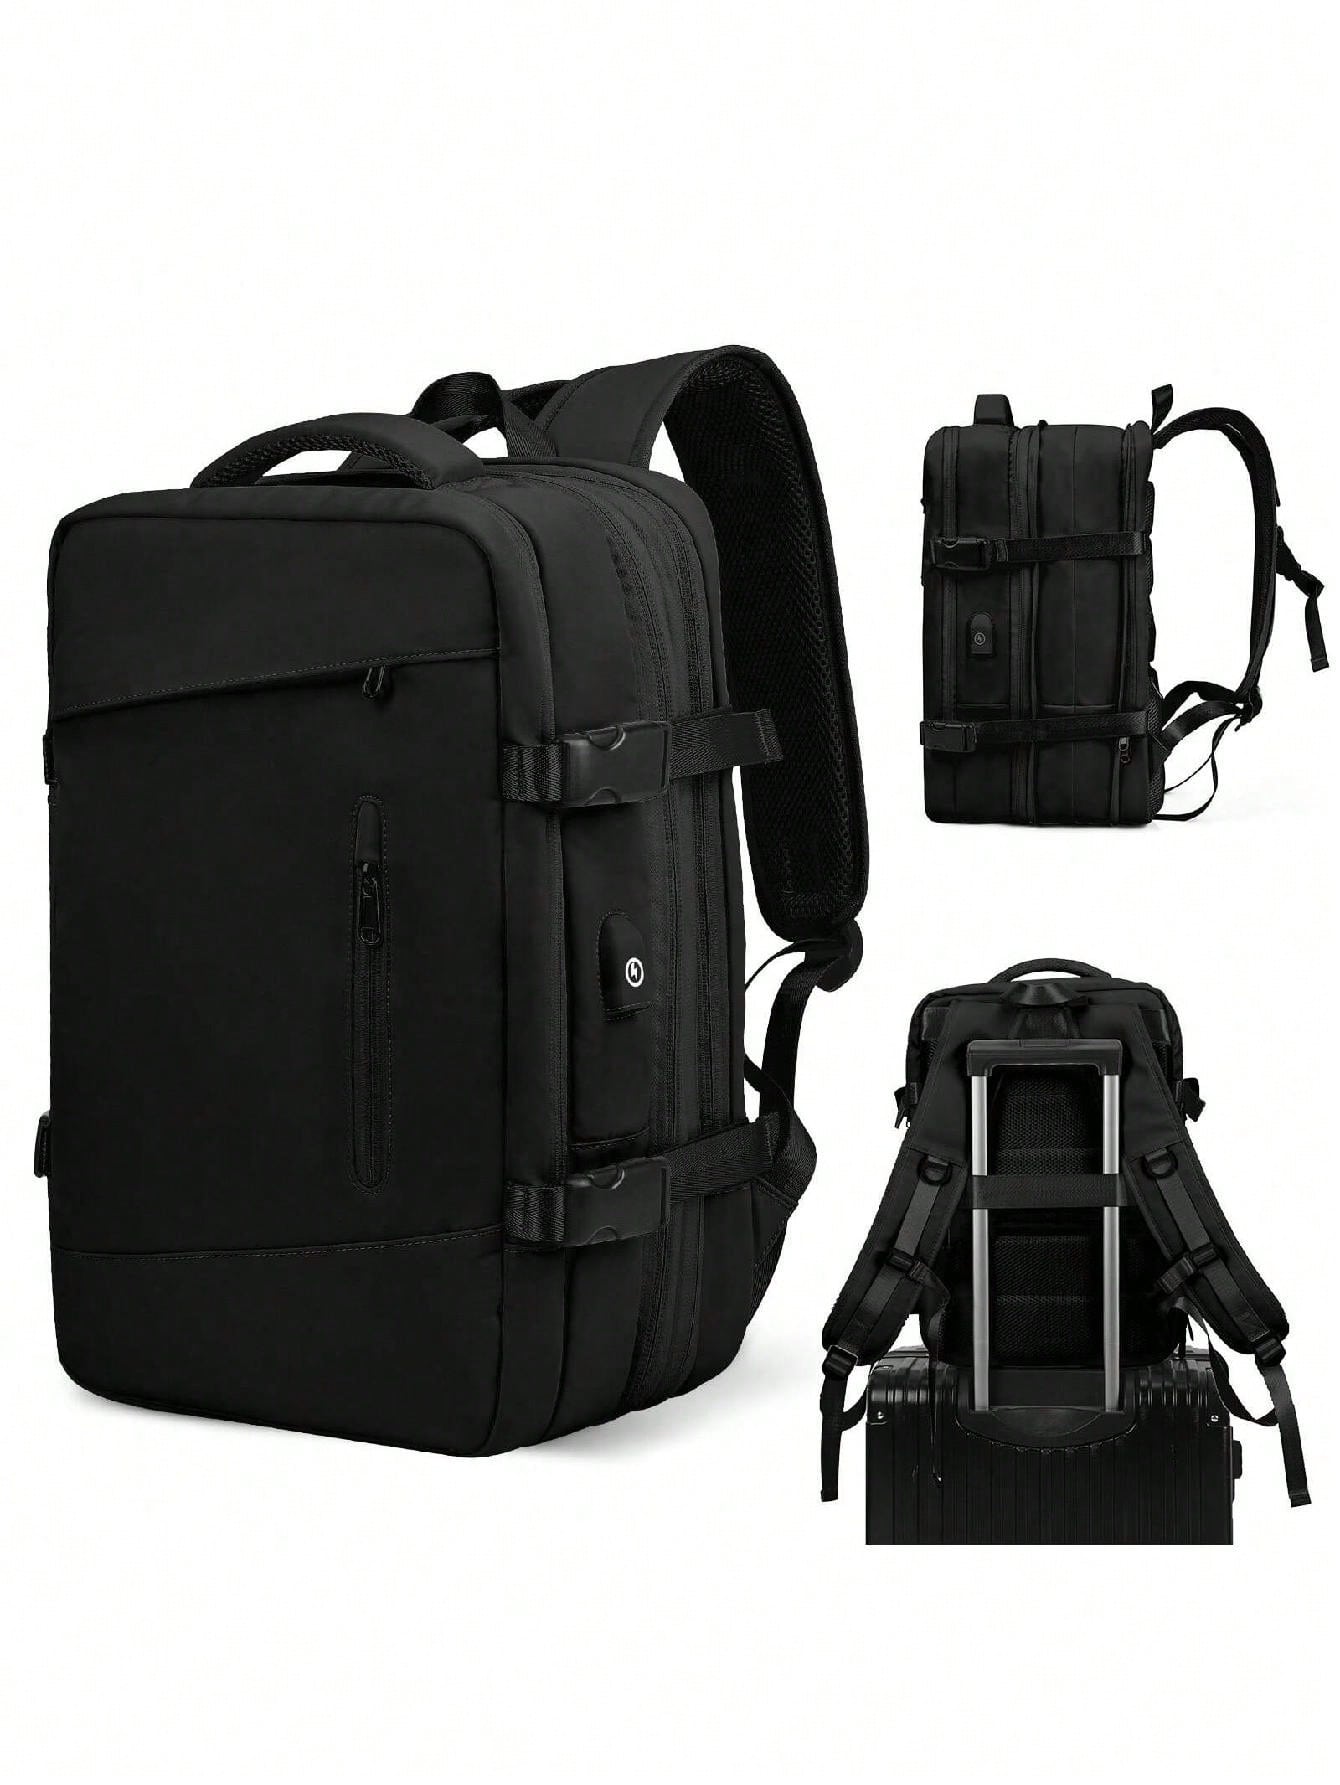 Мужской рюкзак с расширяемой вместимостью для деловых поездок, серый мужской холщовый рюкзак для альпинизма большой армейский дорожный рюкзак для мальчиков с ведром 2022